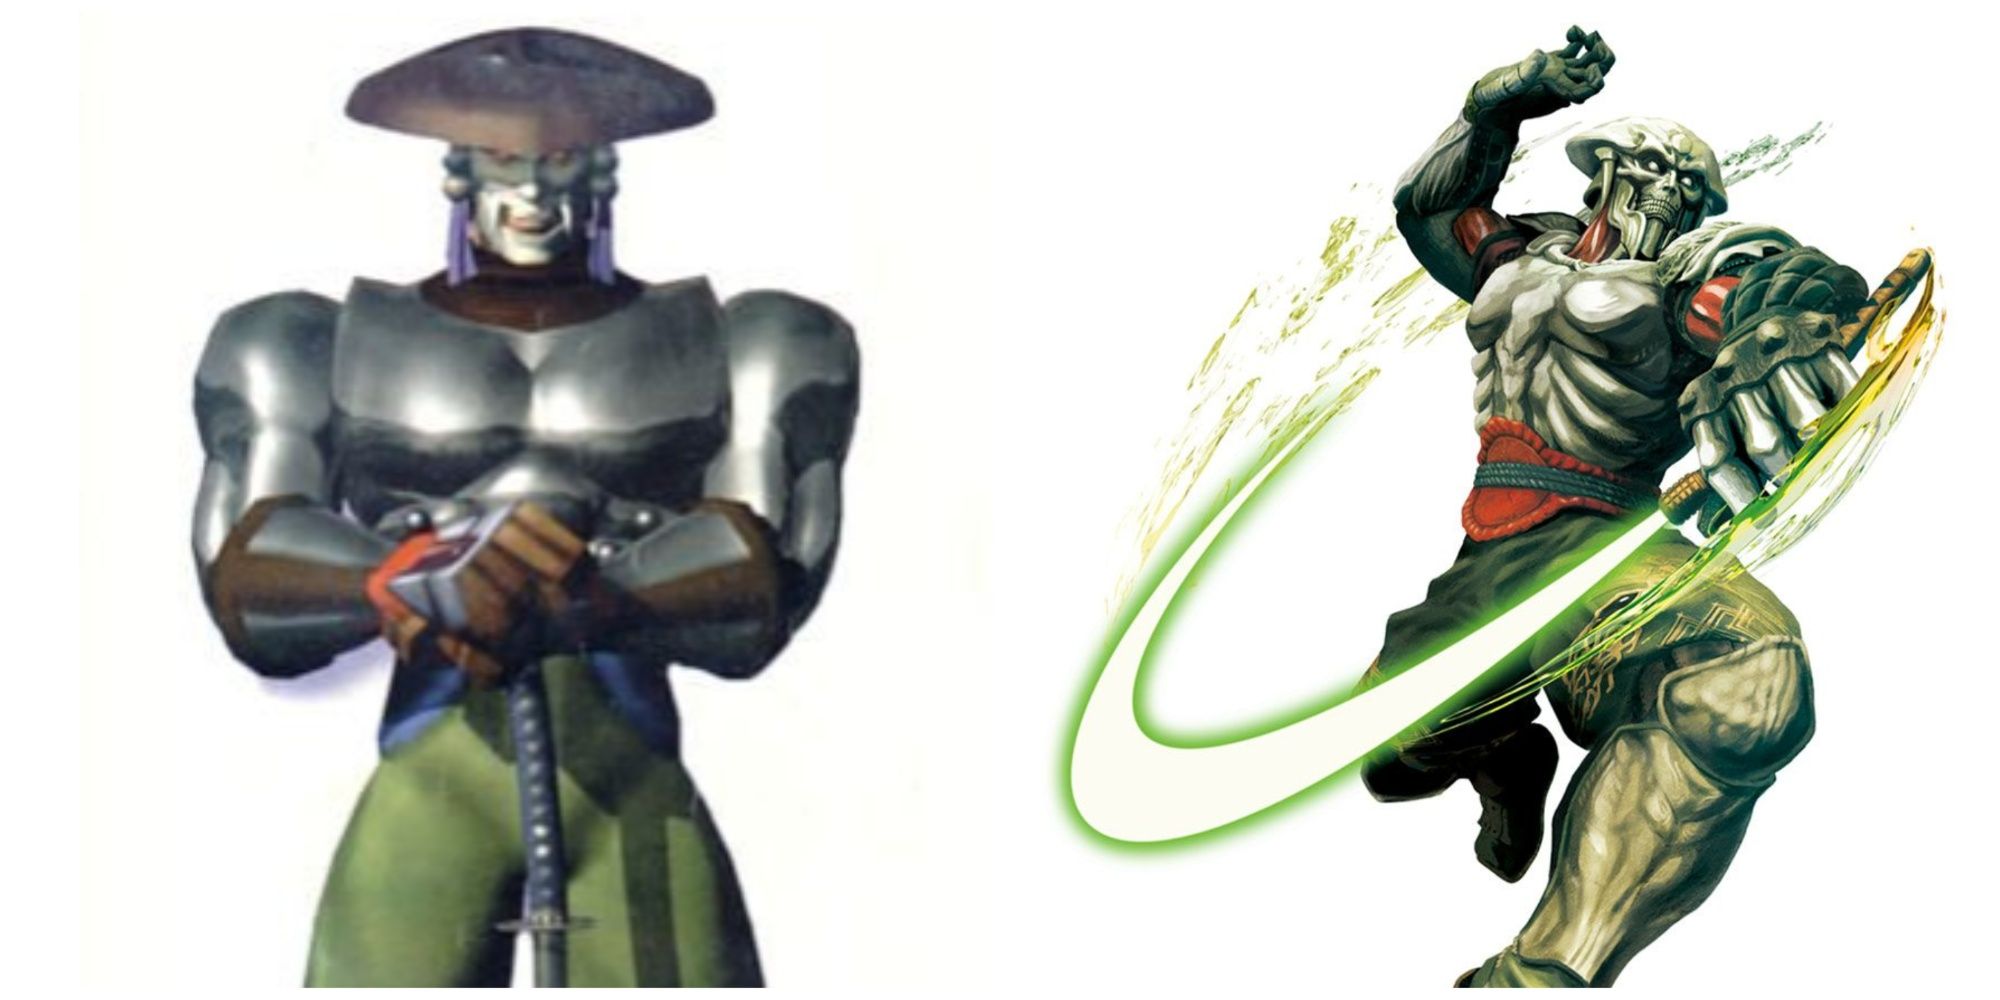 Yoshimitsu's designs in Tekken 2 and Tekken 3